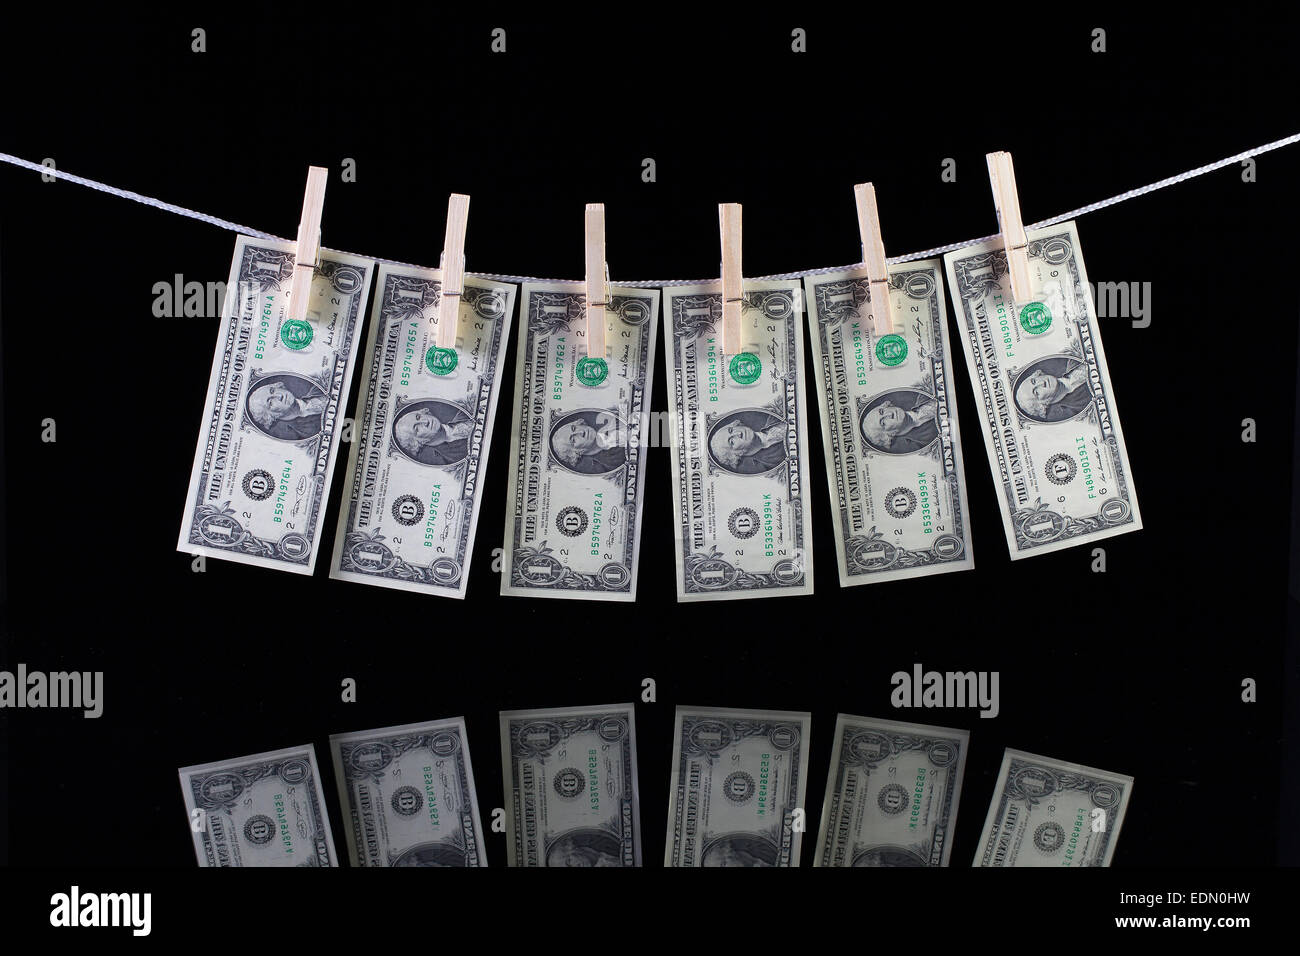 Billets en dollar US Sales suspendu à une corde et se reflétant dans la vitre Banque D'Images